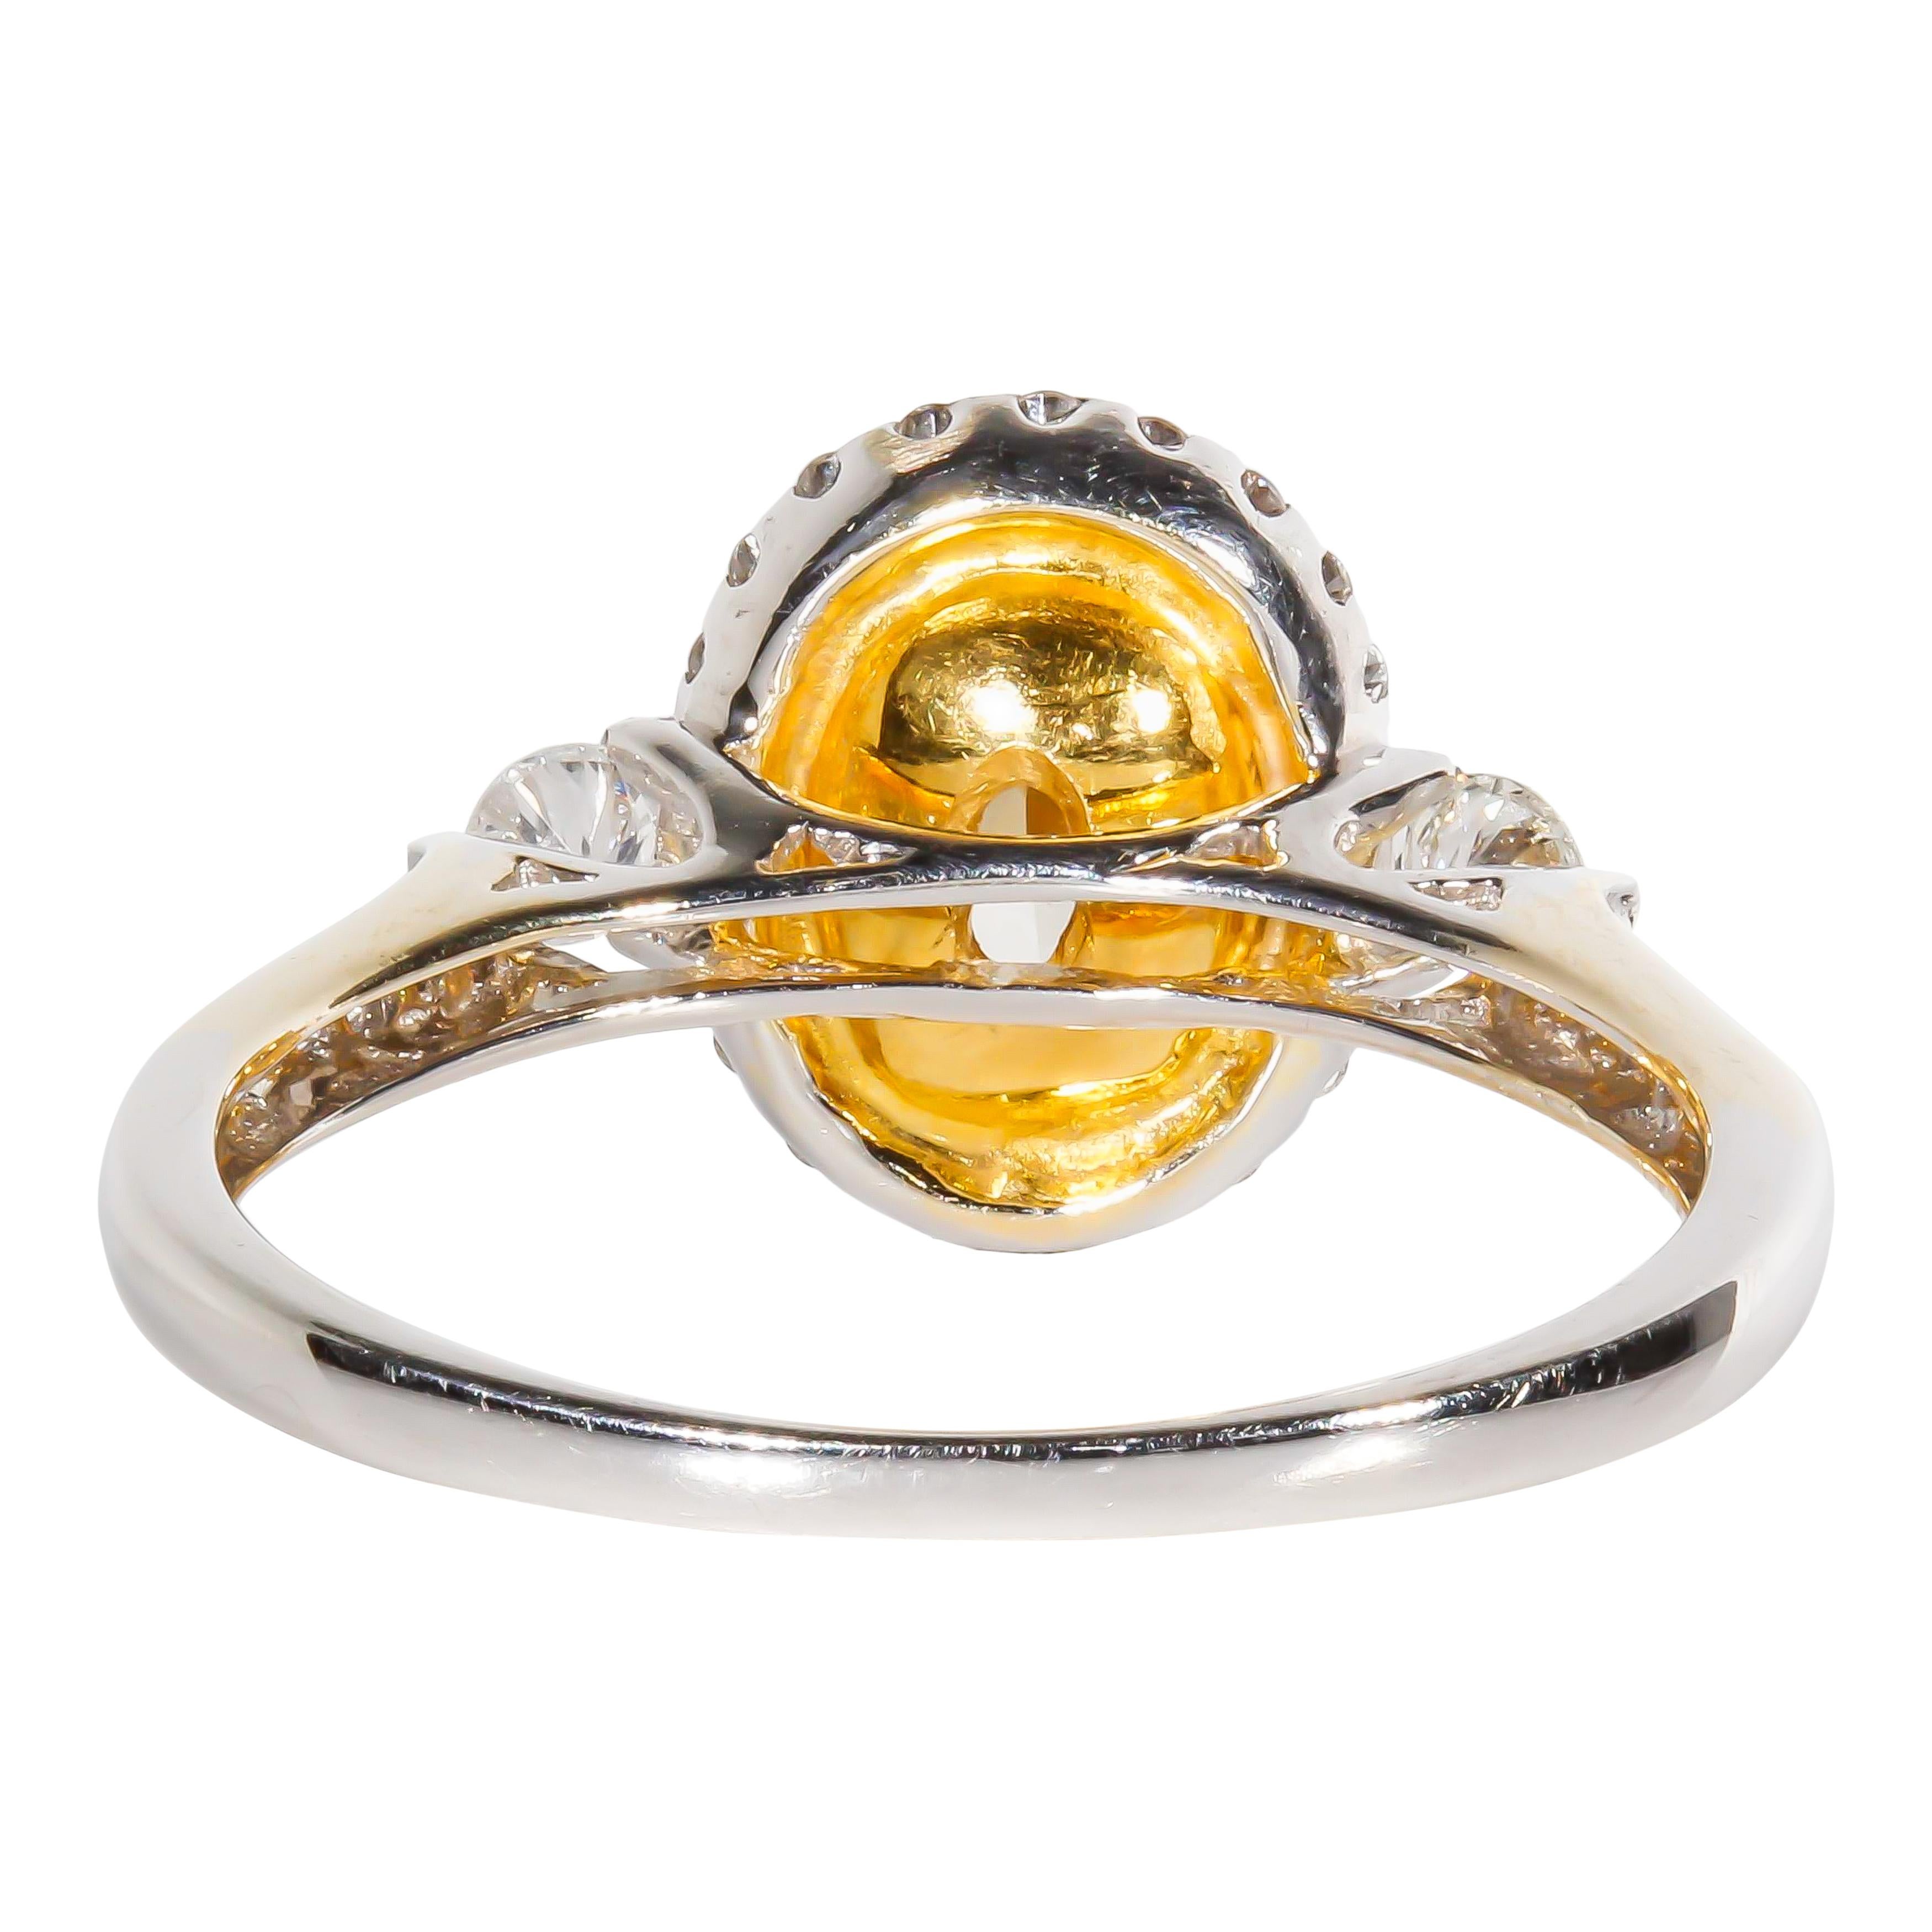 Women's or Men's GIA Certified 1.02 Carat Diamond Cocktail Ring